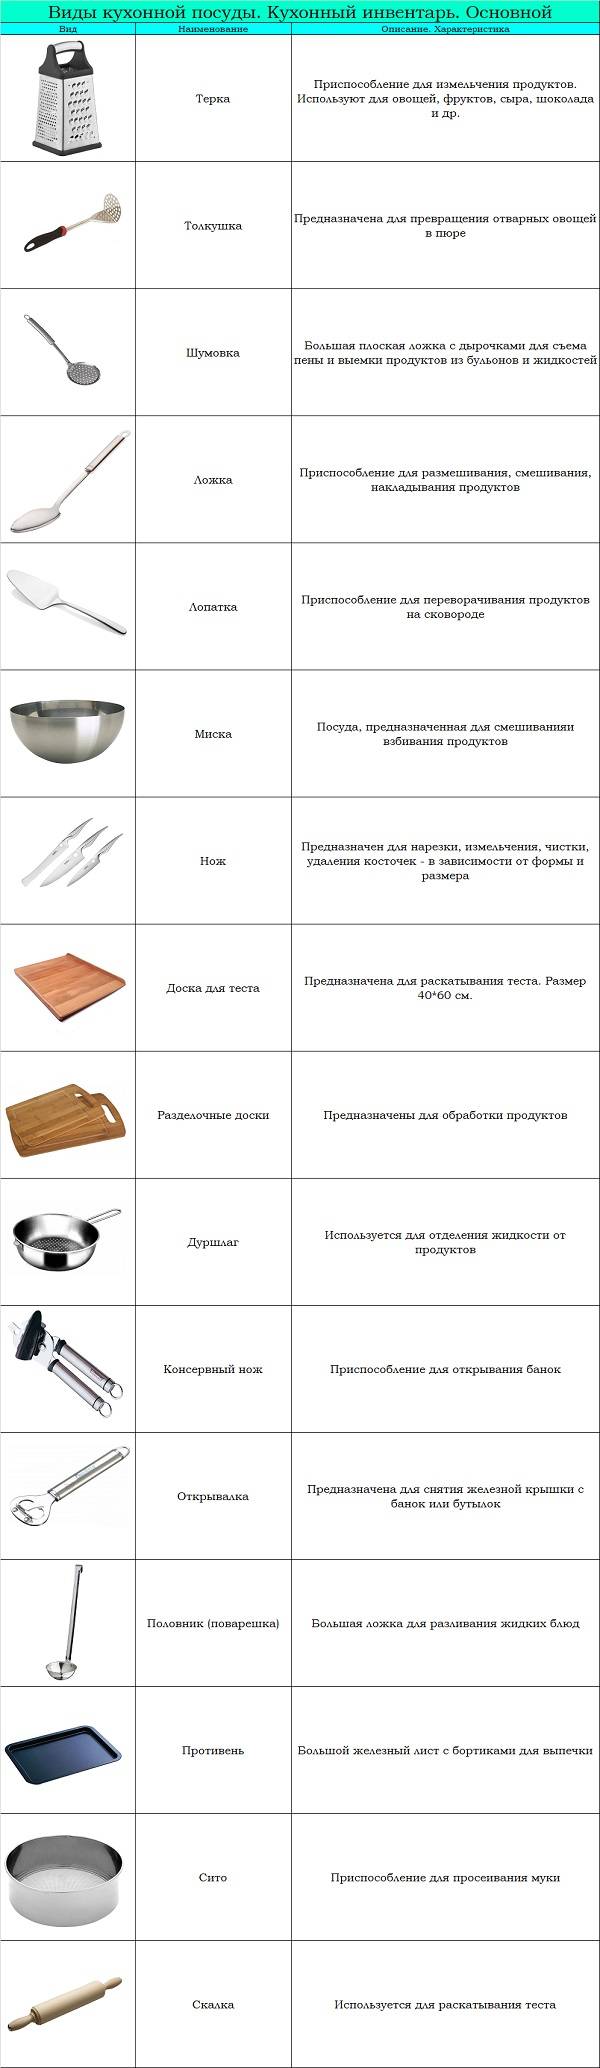 Кухонная утварь (посуда)